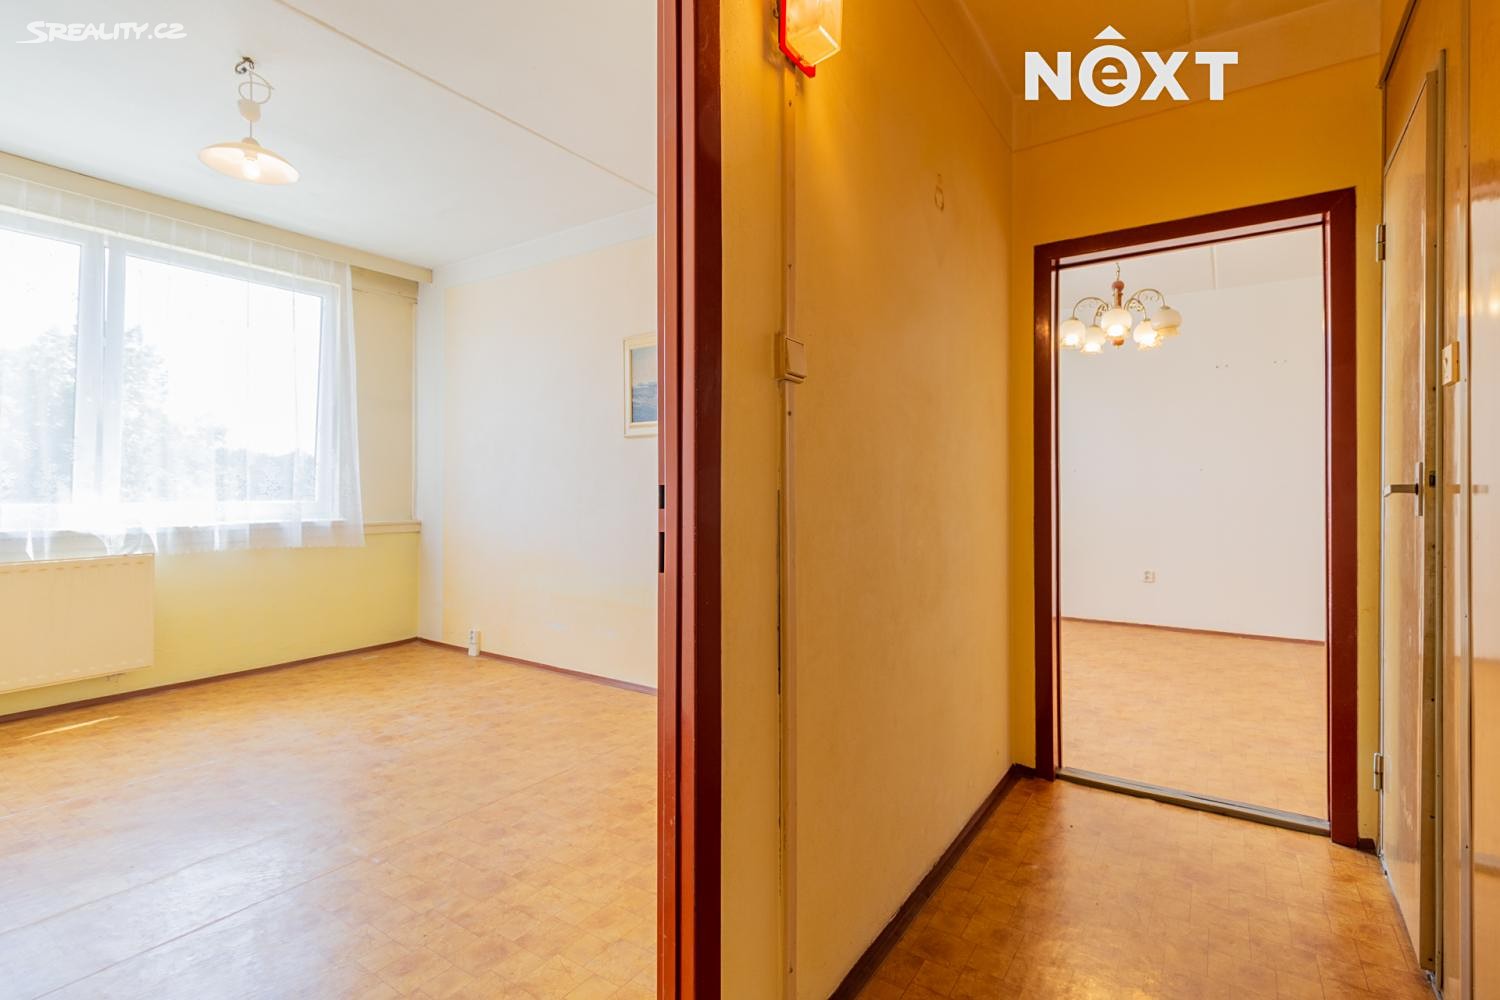 Prodej bytu 2+kk 42 m², Všemyslice - Neznašov, okres České Budějovice